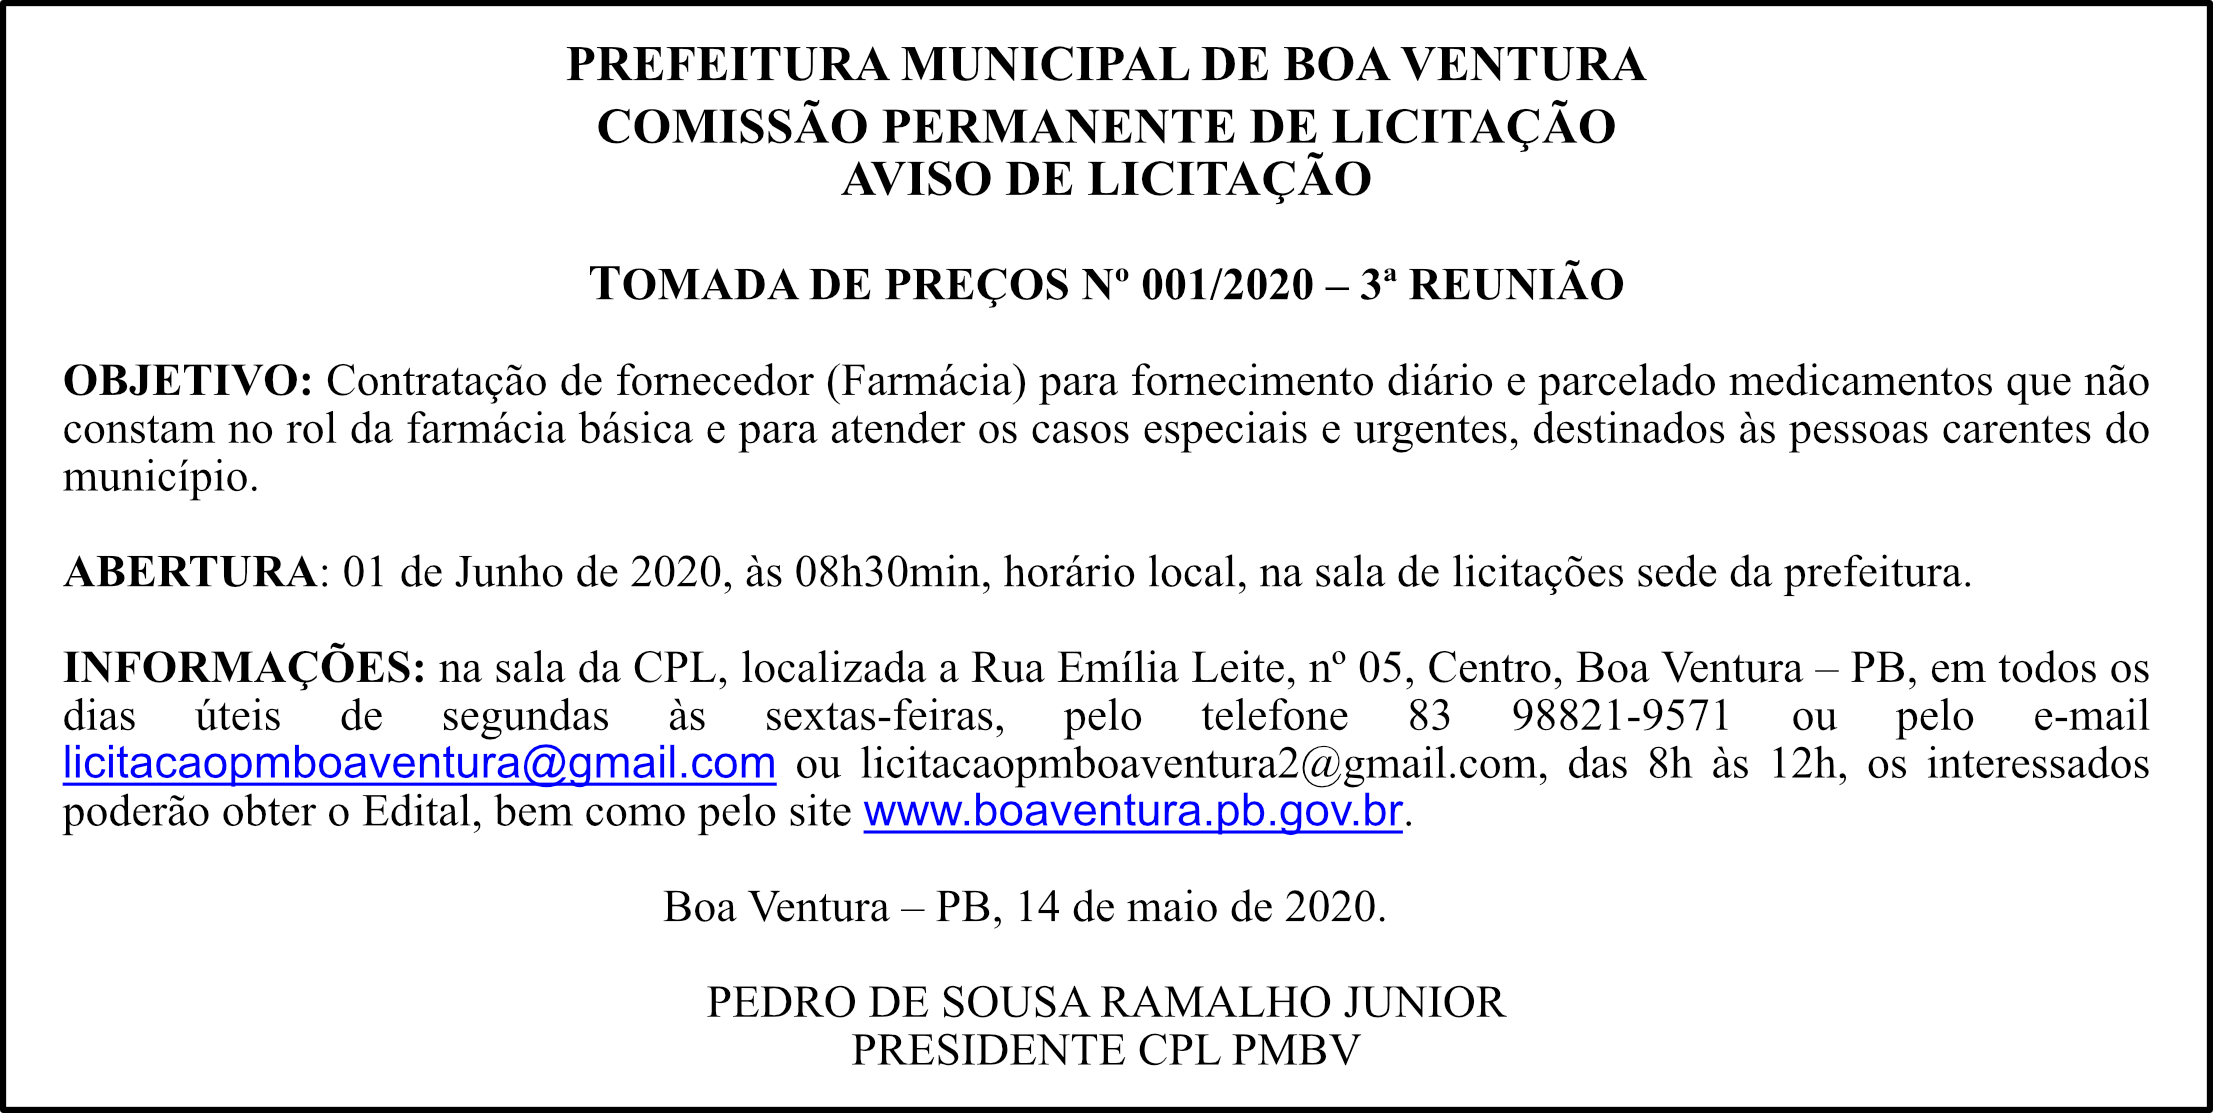 PREFEITURA MUNICIPAL DE BOA VENTURA – TOMADA DE PREÇOS 01/2020 – 3ª REUNIÃO